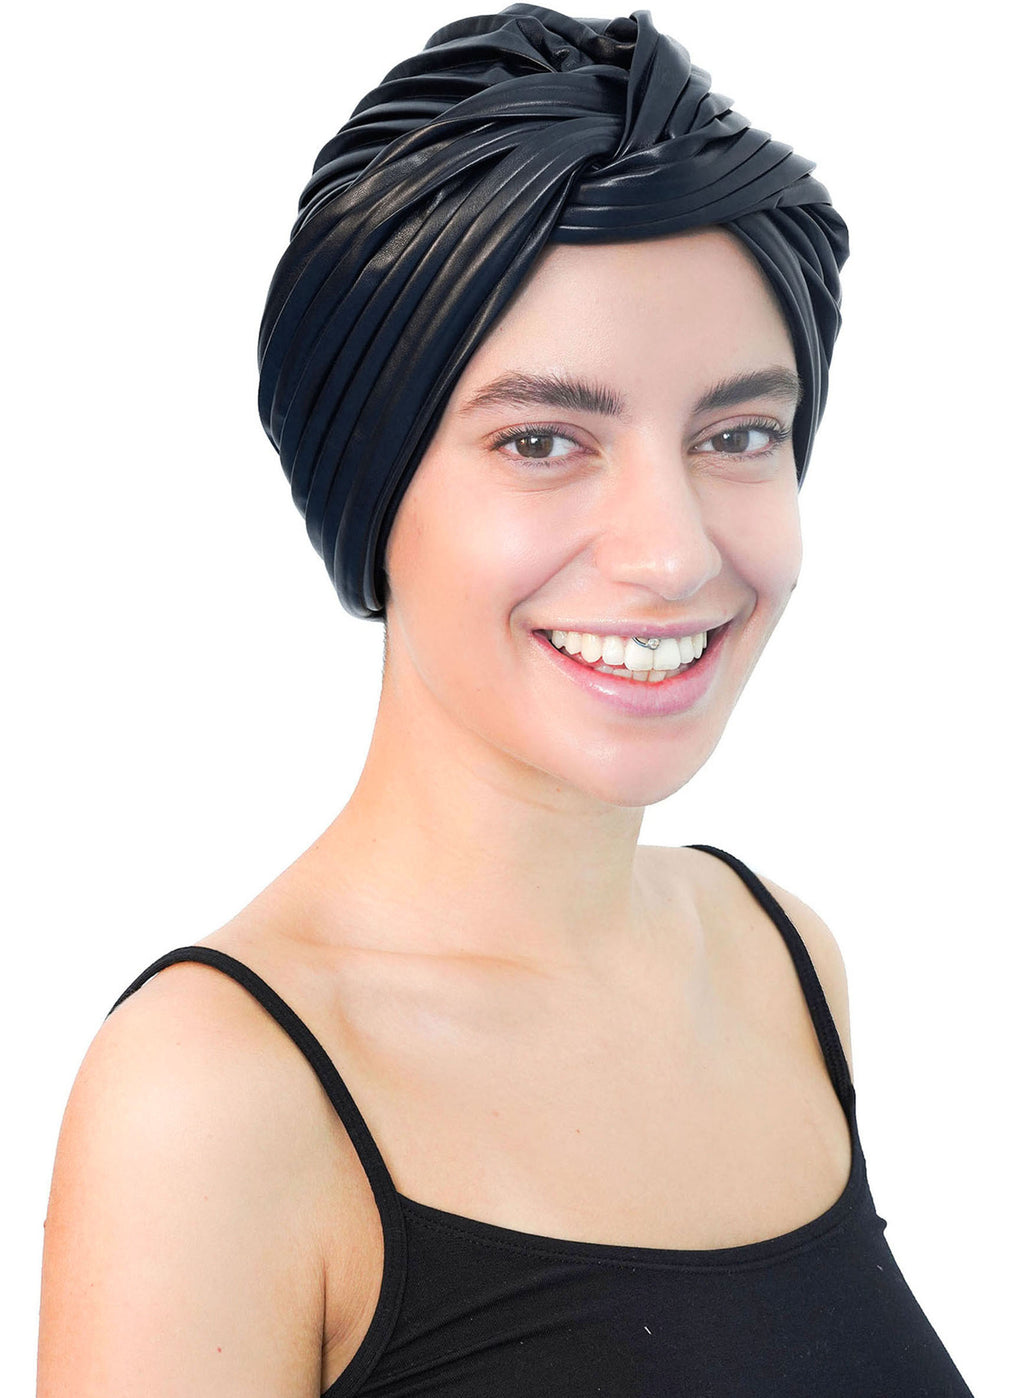 Kopfbedeckung aus Kunstleder mit verdrehter Vorderseite Neues Design (Deep Navy)